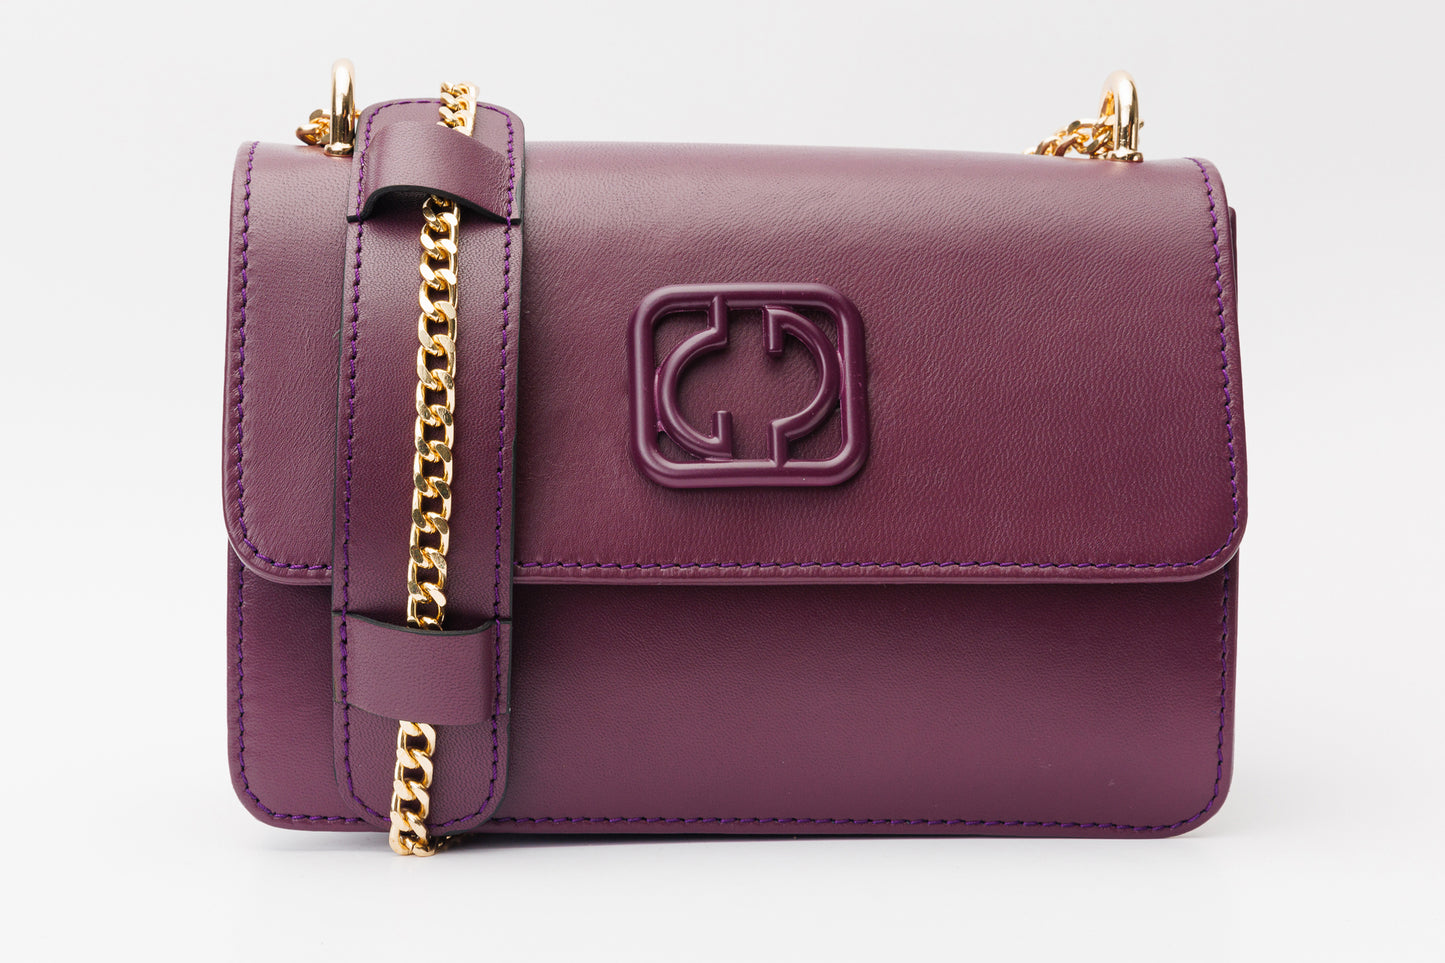 The Maneadero Purple Leather Handbag